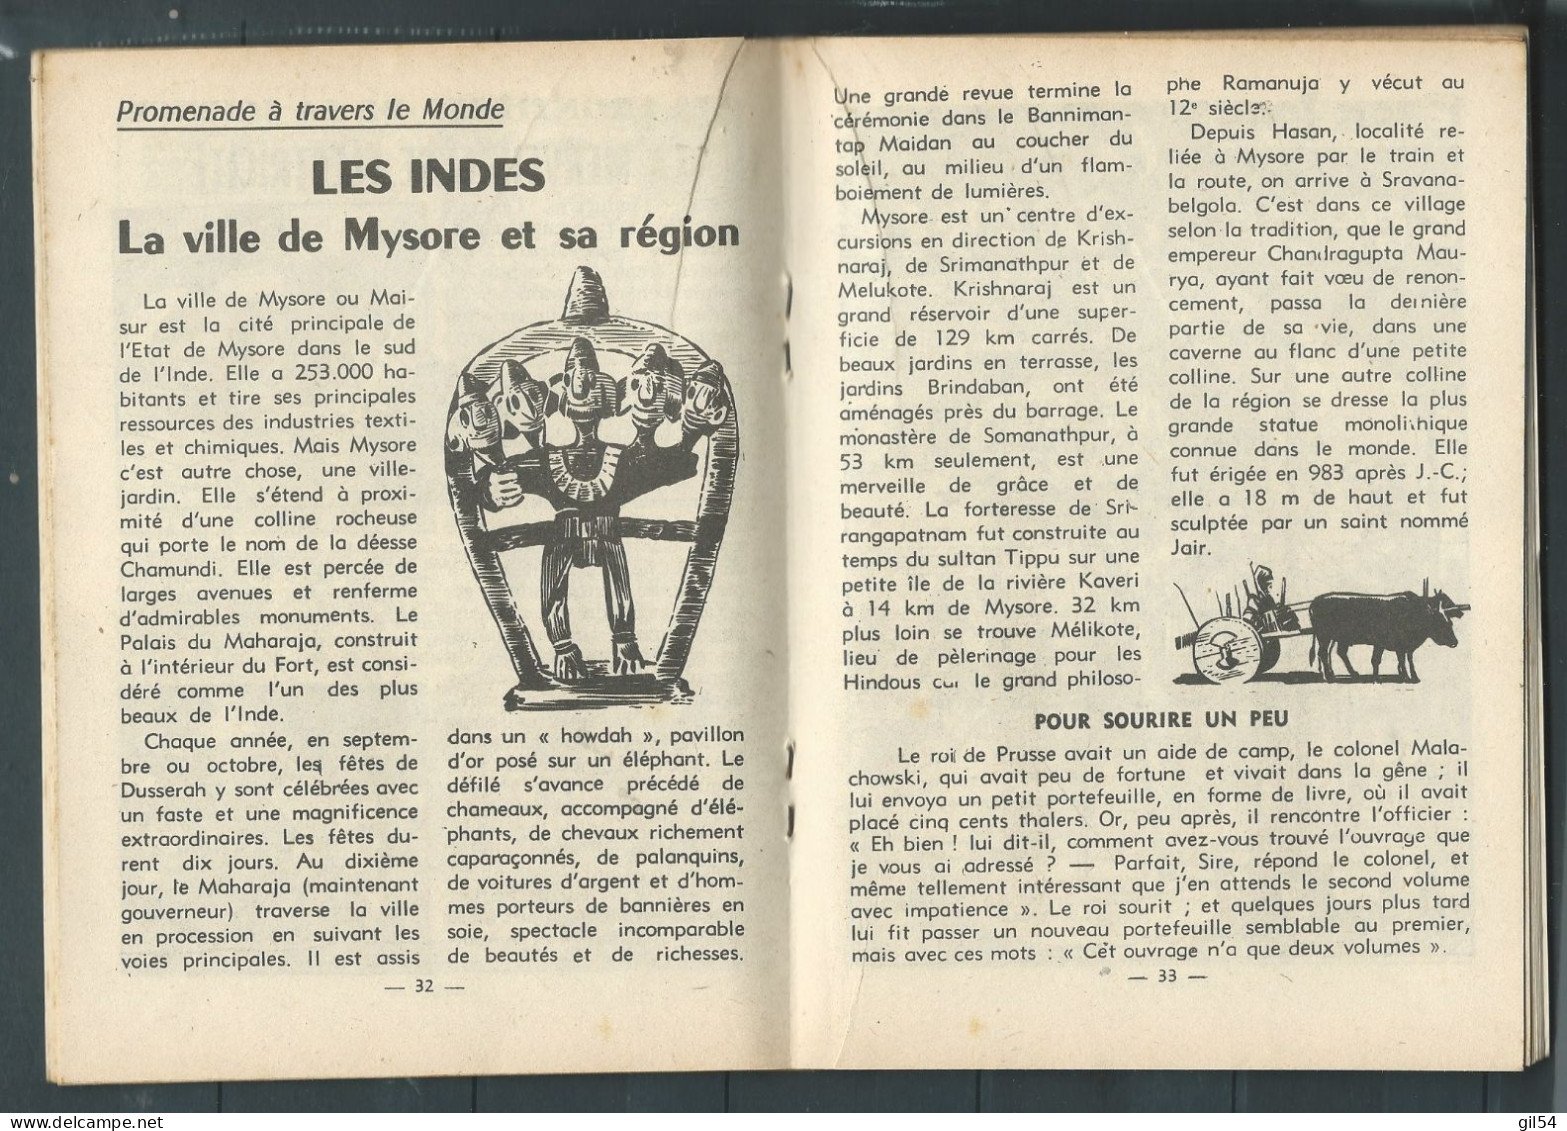 Bd " Buck John   " Bimensuel N° 252 " Une Idée Lumineuse Mais ..."      , DL  N° 40  1954 - BE-   BUC 0103 - Kleine Formaat